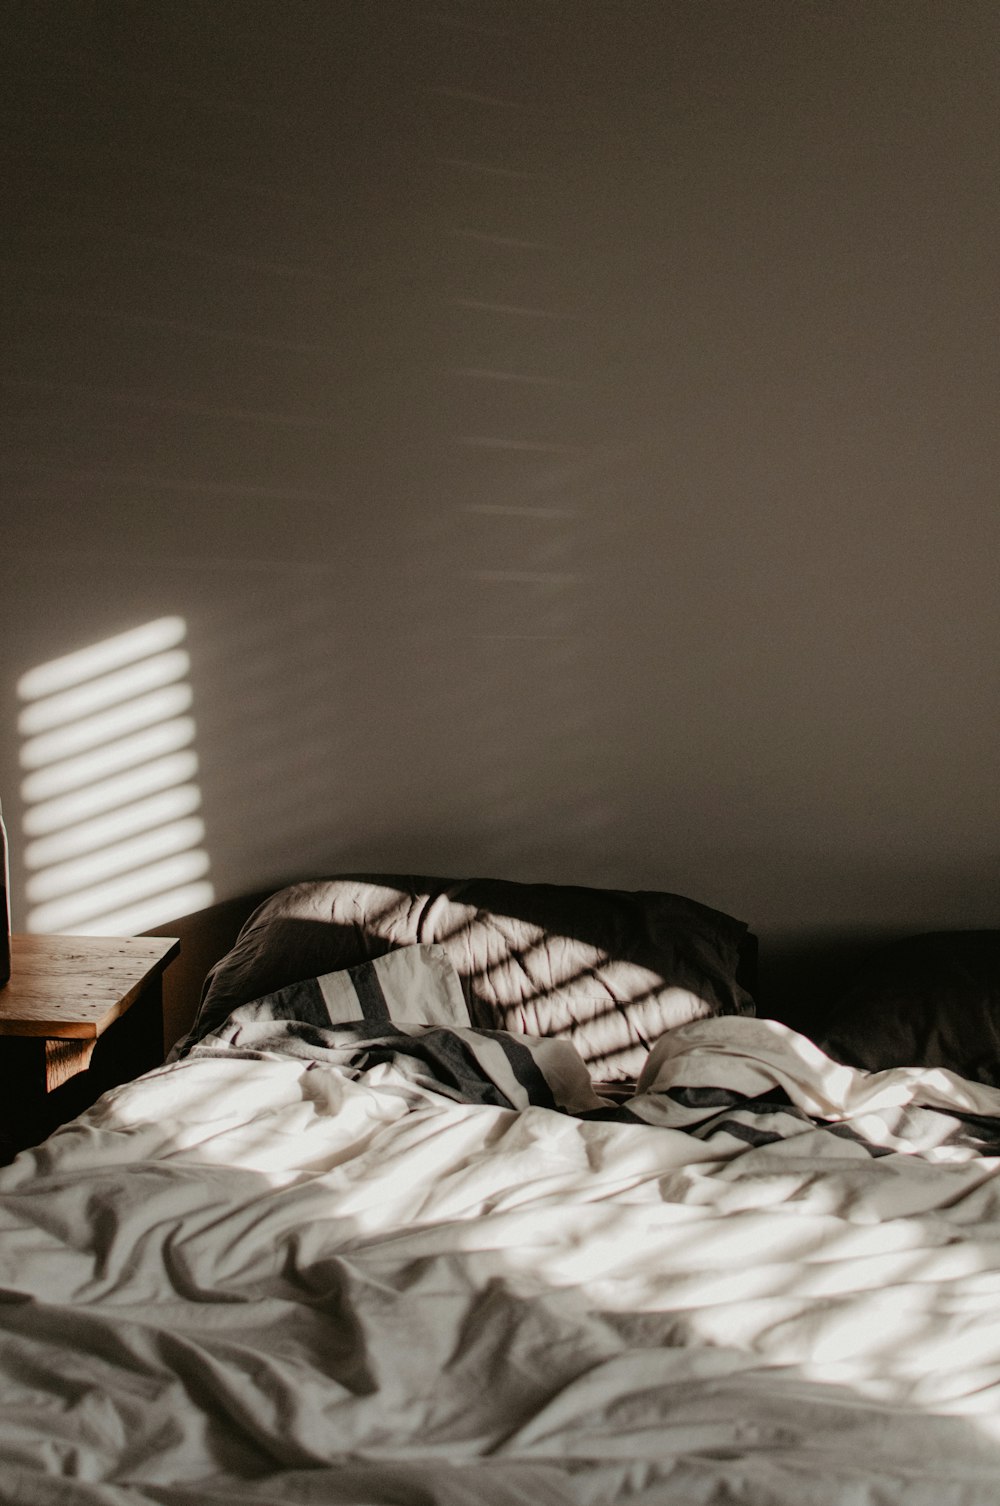 luz solar dentro da cama